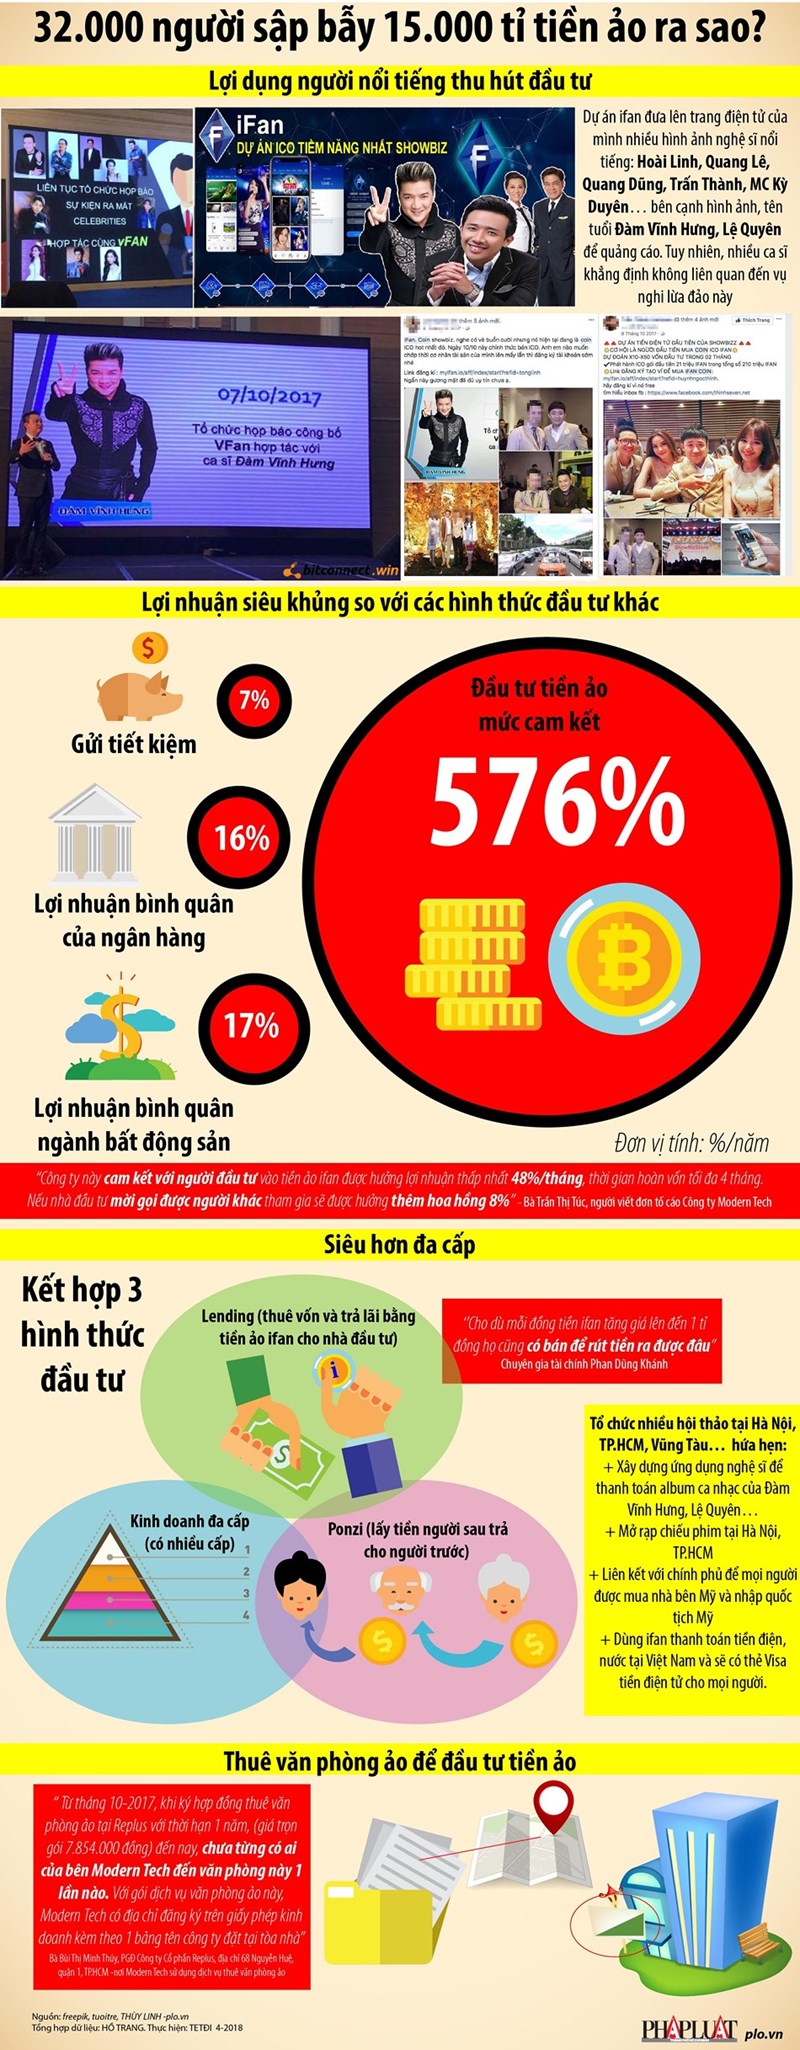 [Infographic] Vụ lừa đảo tiền ảo: Lãi suất siêu khủng 580% nhiều người mờ mắt - Ảnh 1